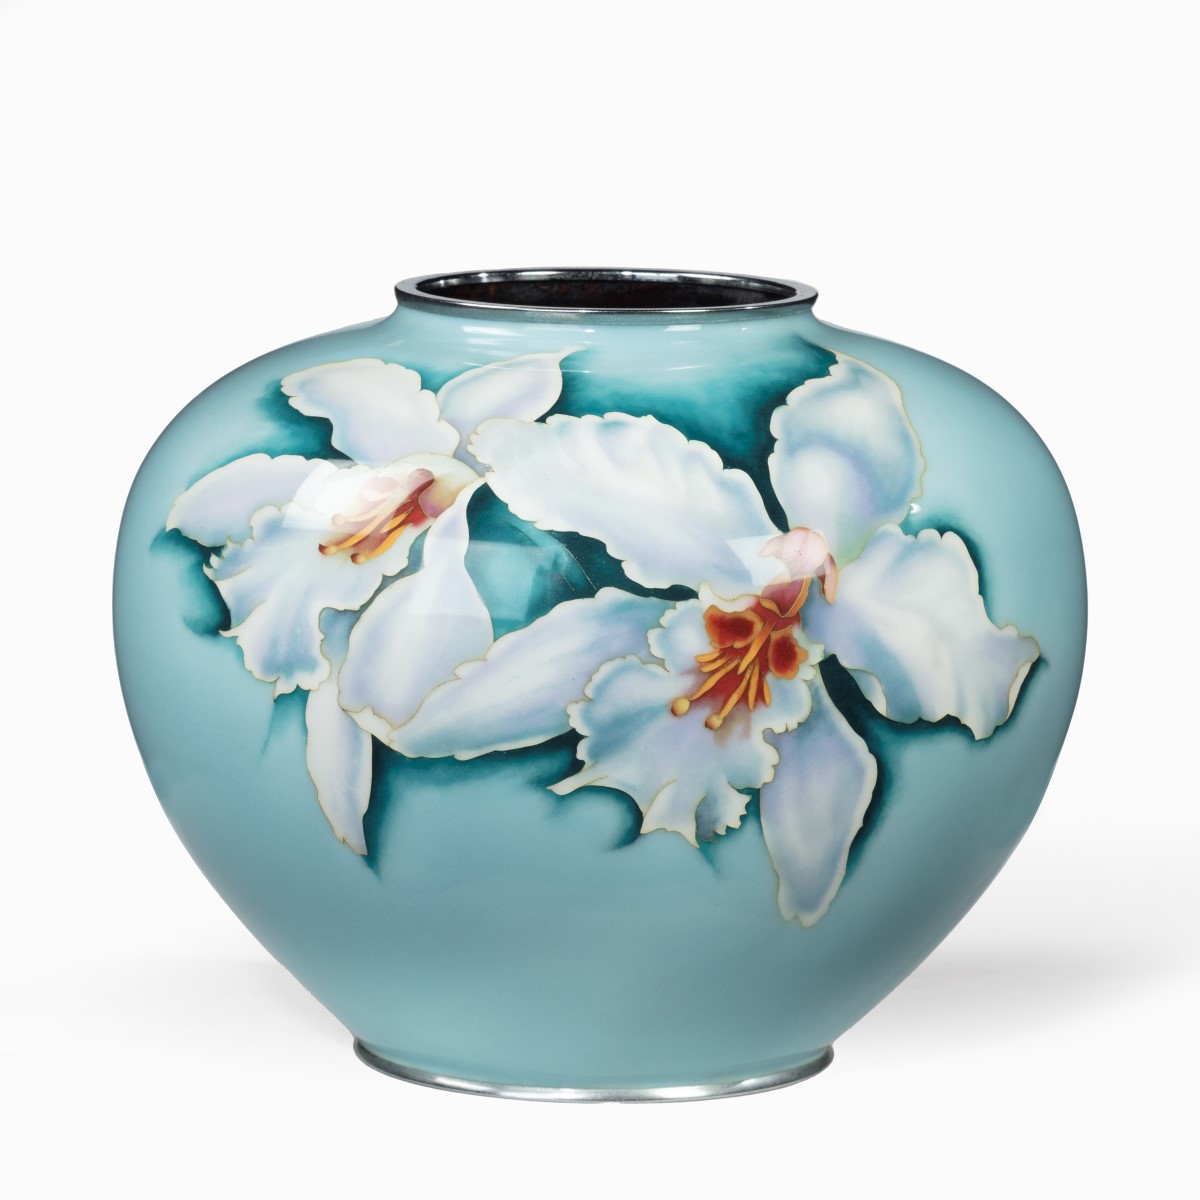 A large bulbous blue Japanese cloisonné vase